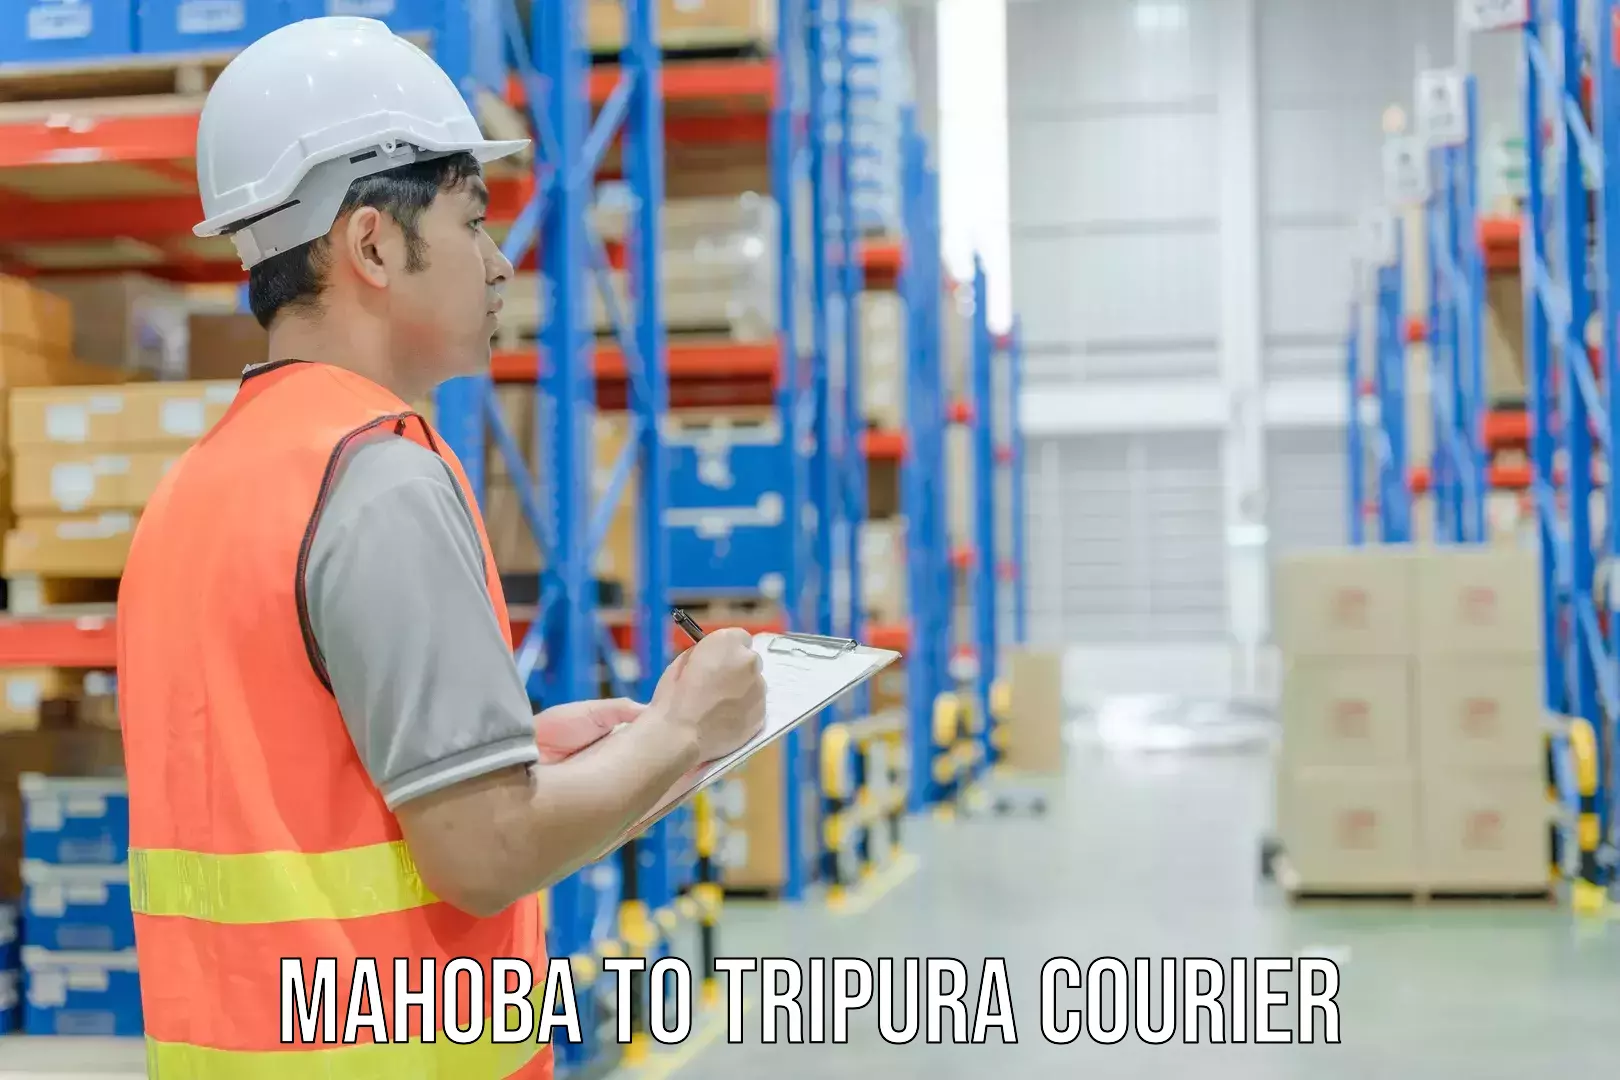 Digital shipping tools Mahoba to IIIT Agartala